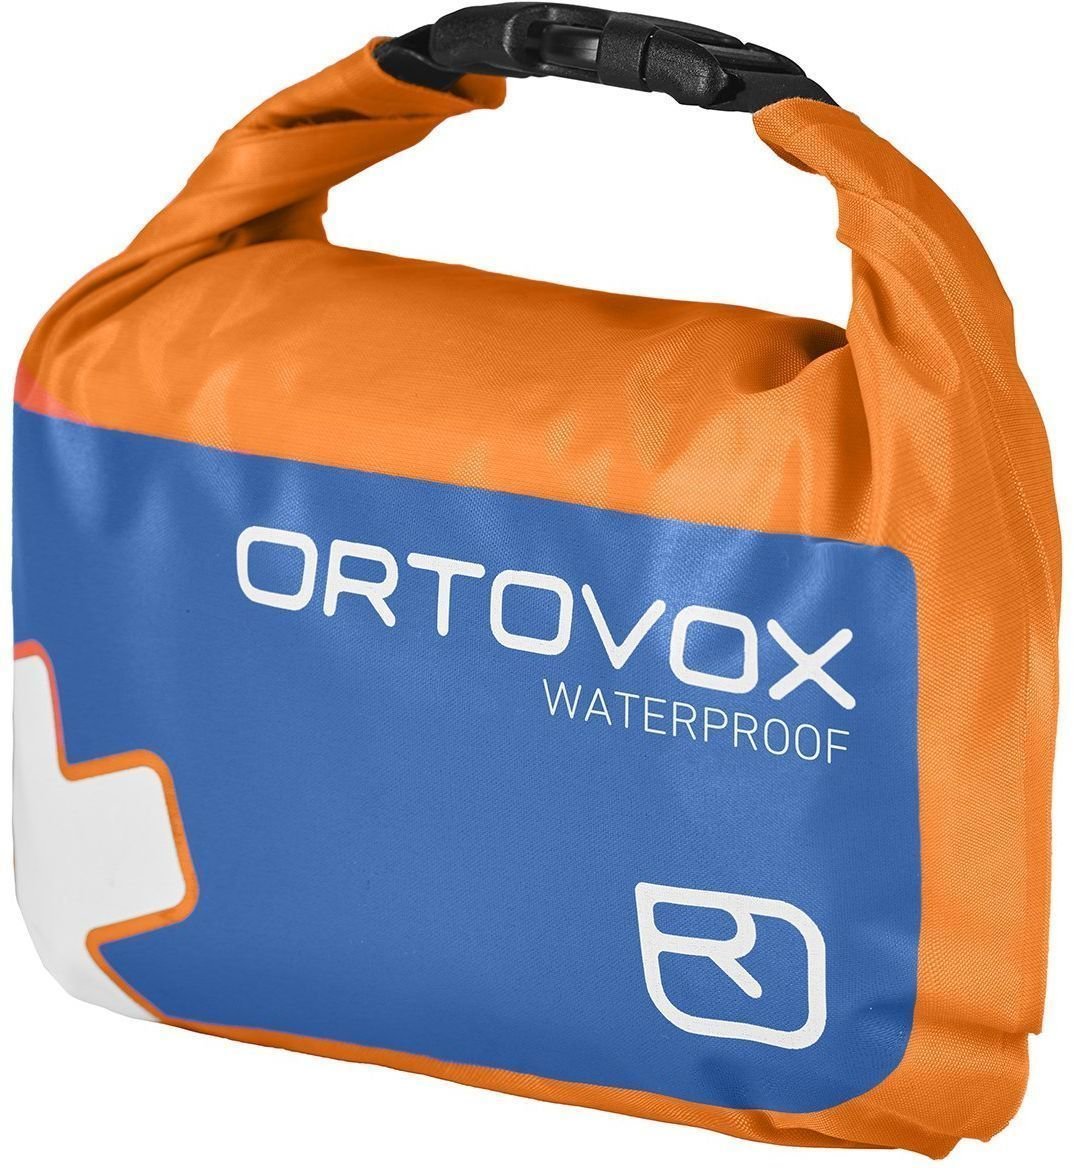 Apteczka jachtowa Ortovox First Aid Waterproof